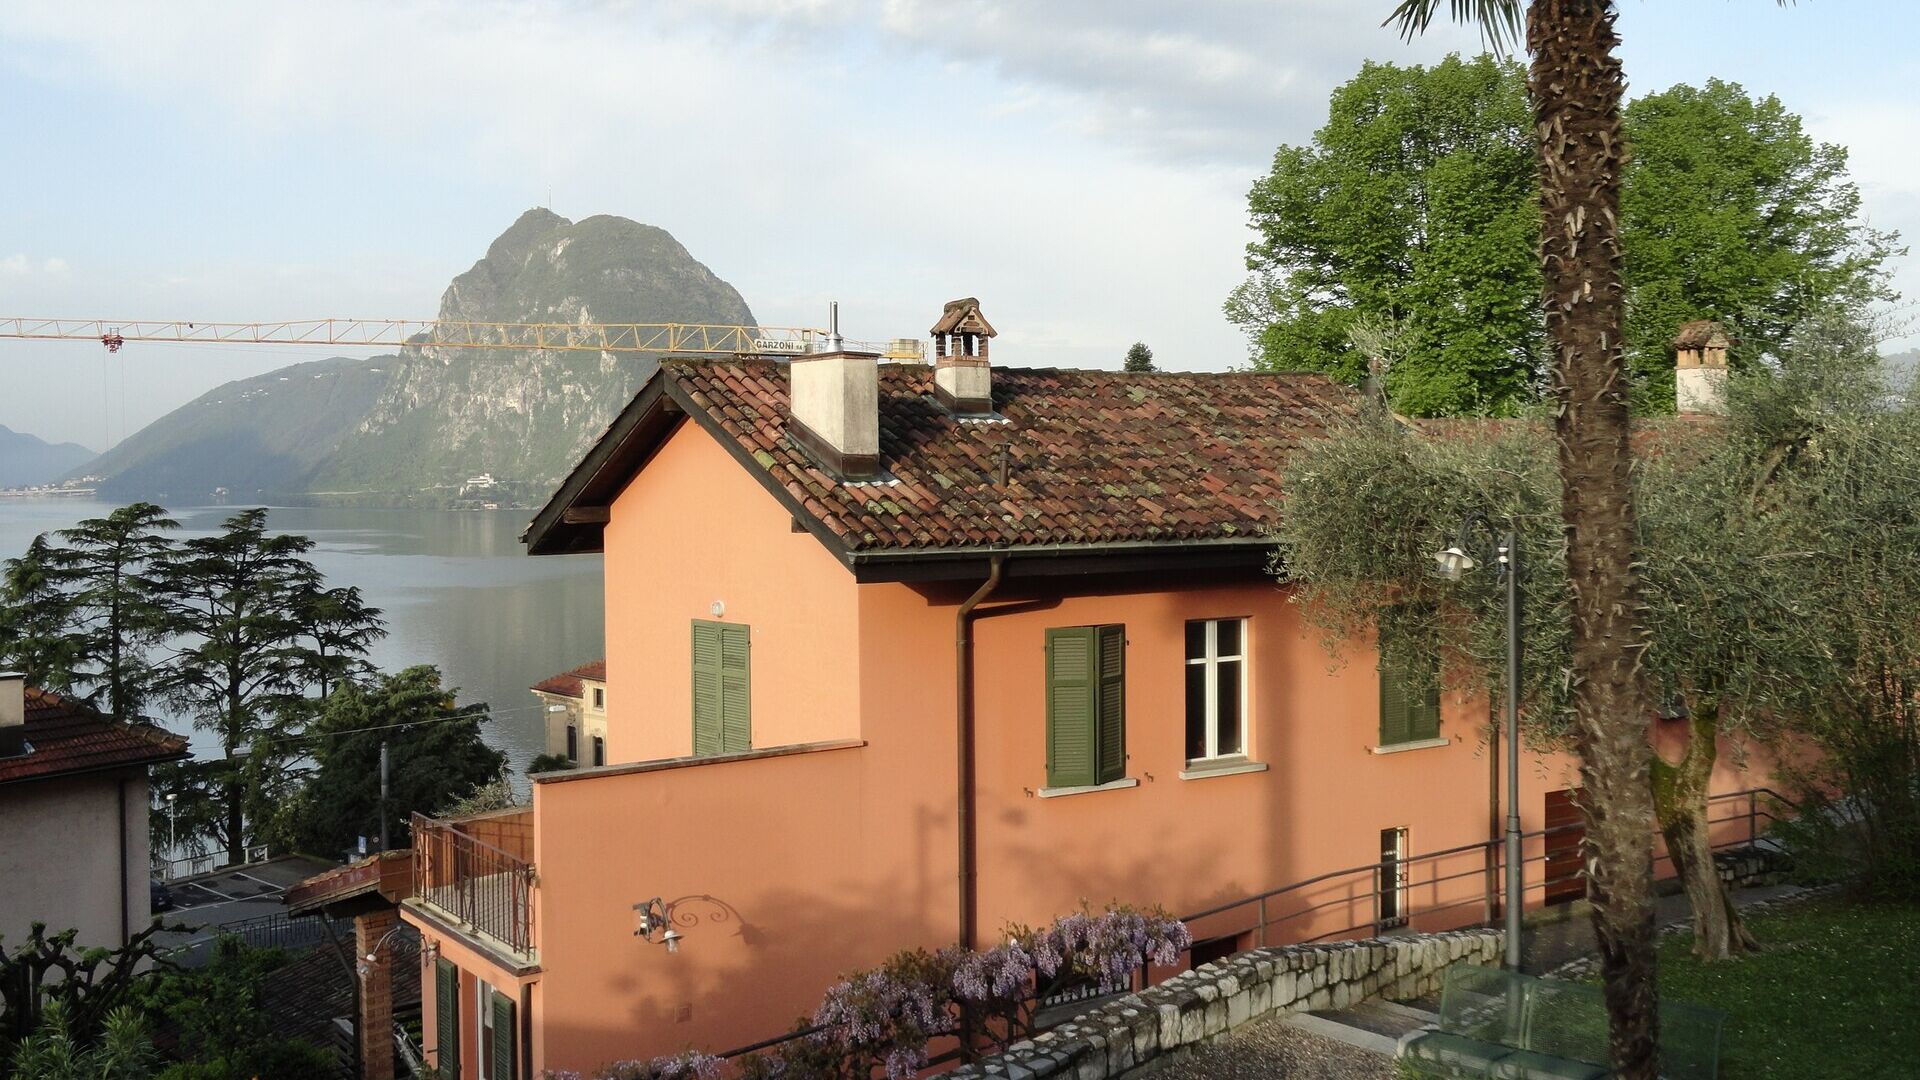 علوم انسانی و طبیعی: Casa Carla Cattaneo در Castagnola، در قلمرو شهرداری لوگانو، در Canton Ticino: میزبان بنیاد تحقیقات علمی IBSA خواهد بود، که اهداف بلندپروازانه جدیدی را برای خود تعیین می کند.